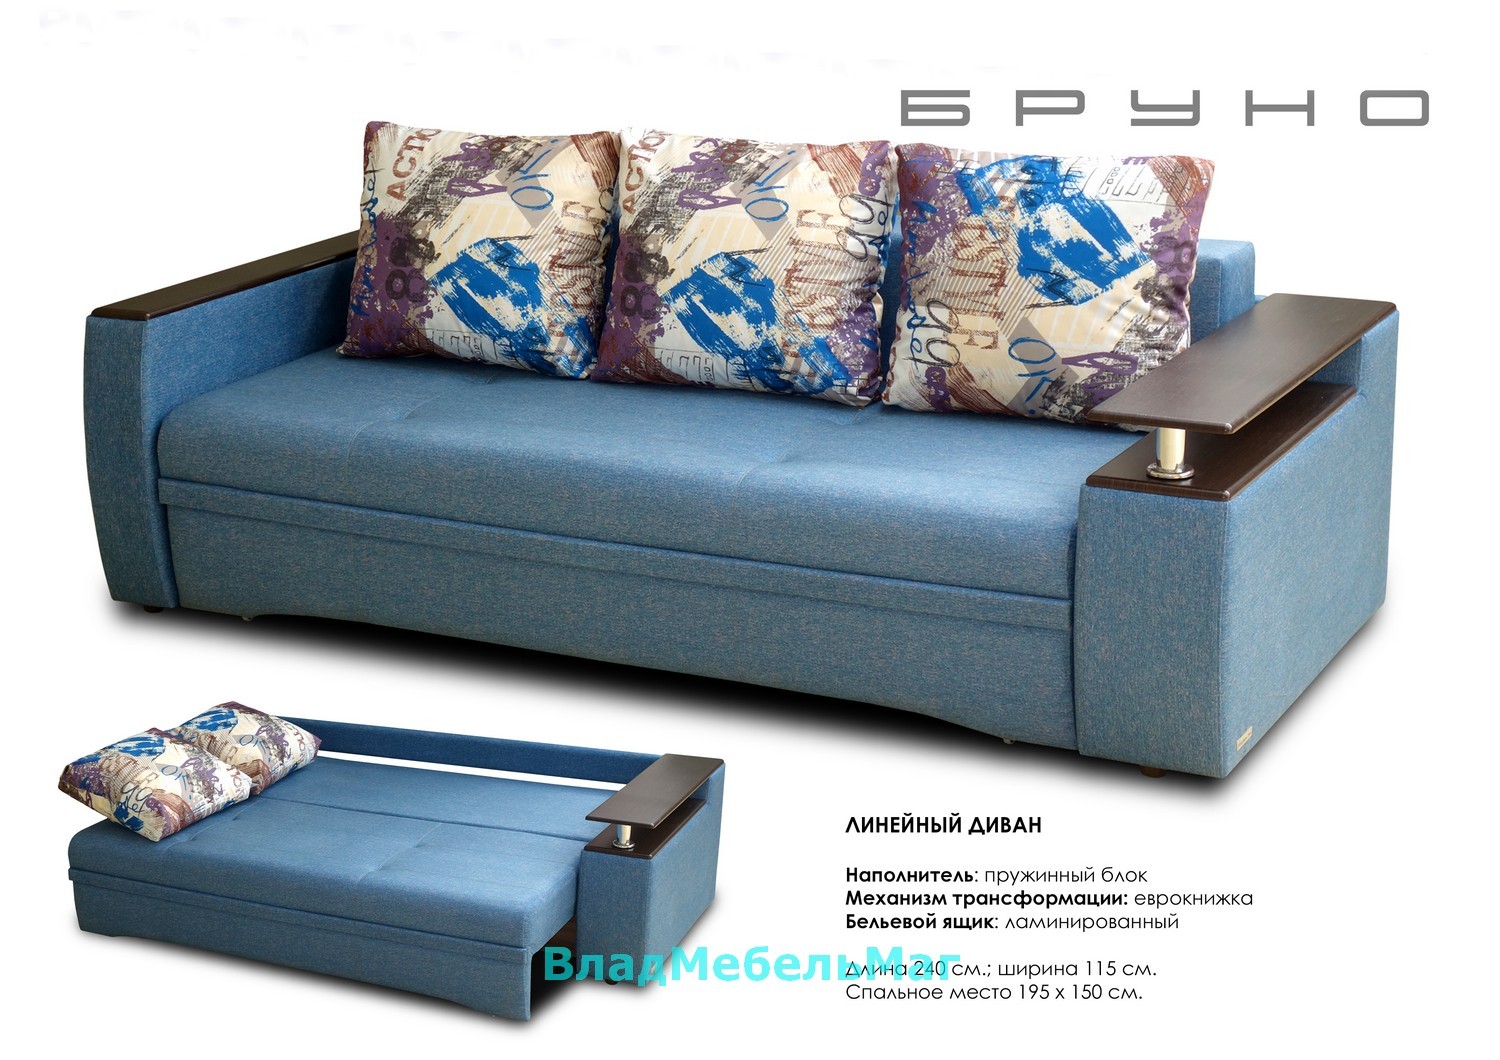 Диван-кровать Бруно можно купить онлайн в магазине, id12086